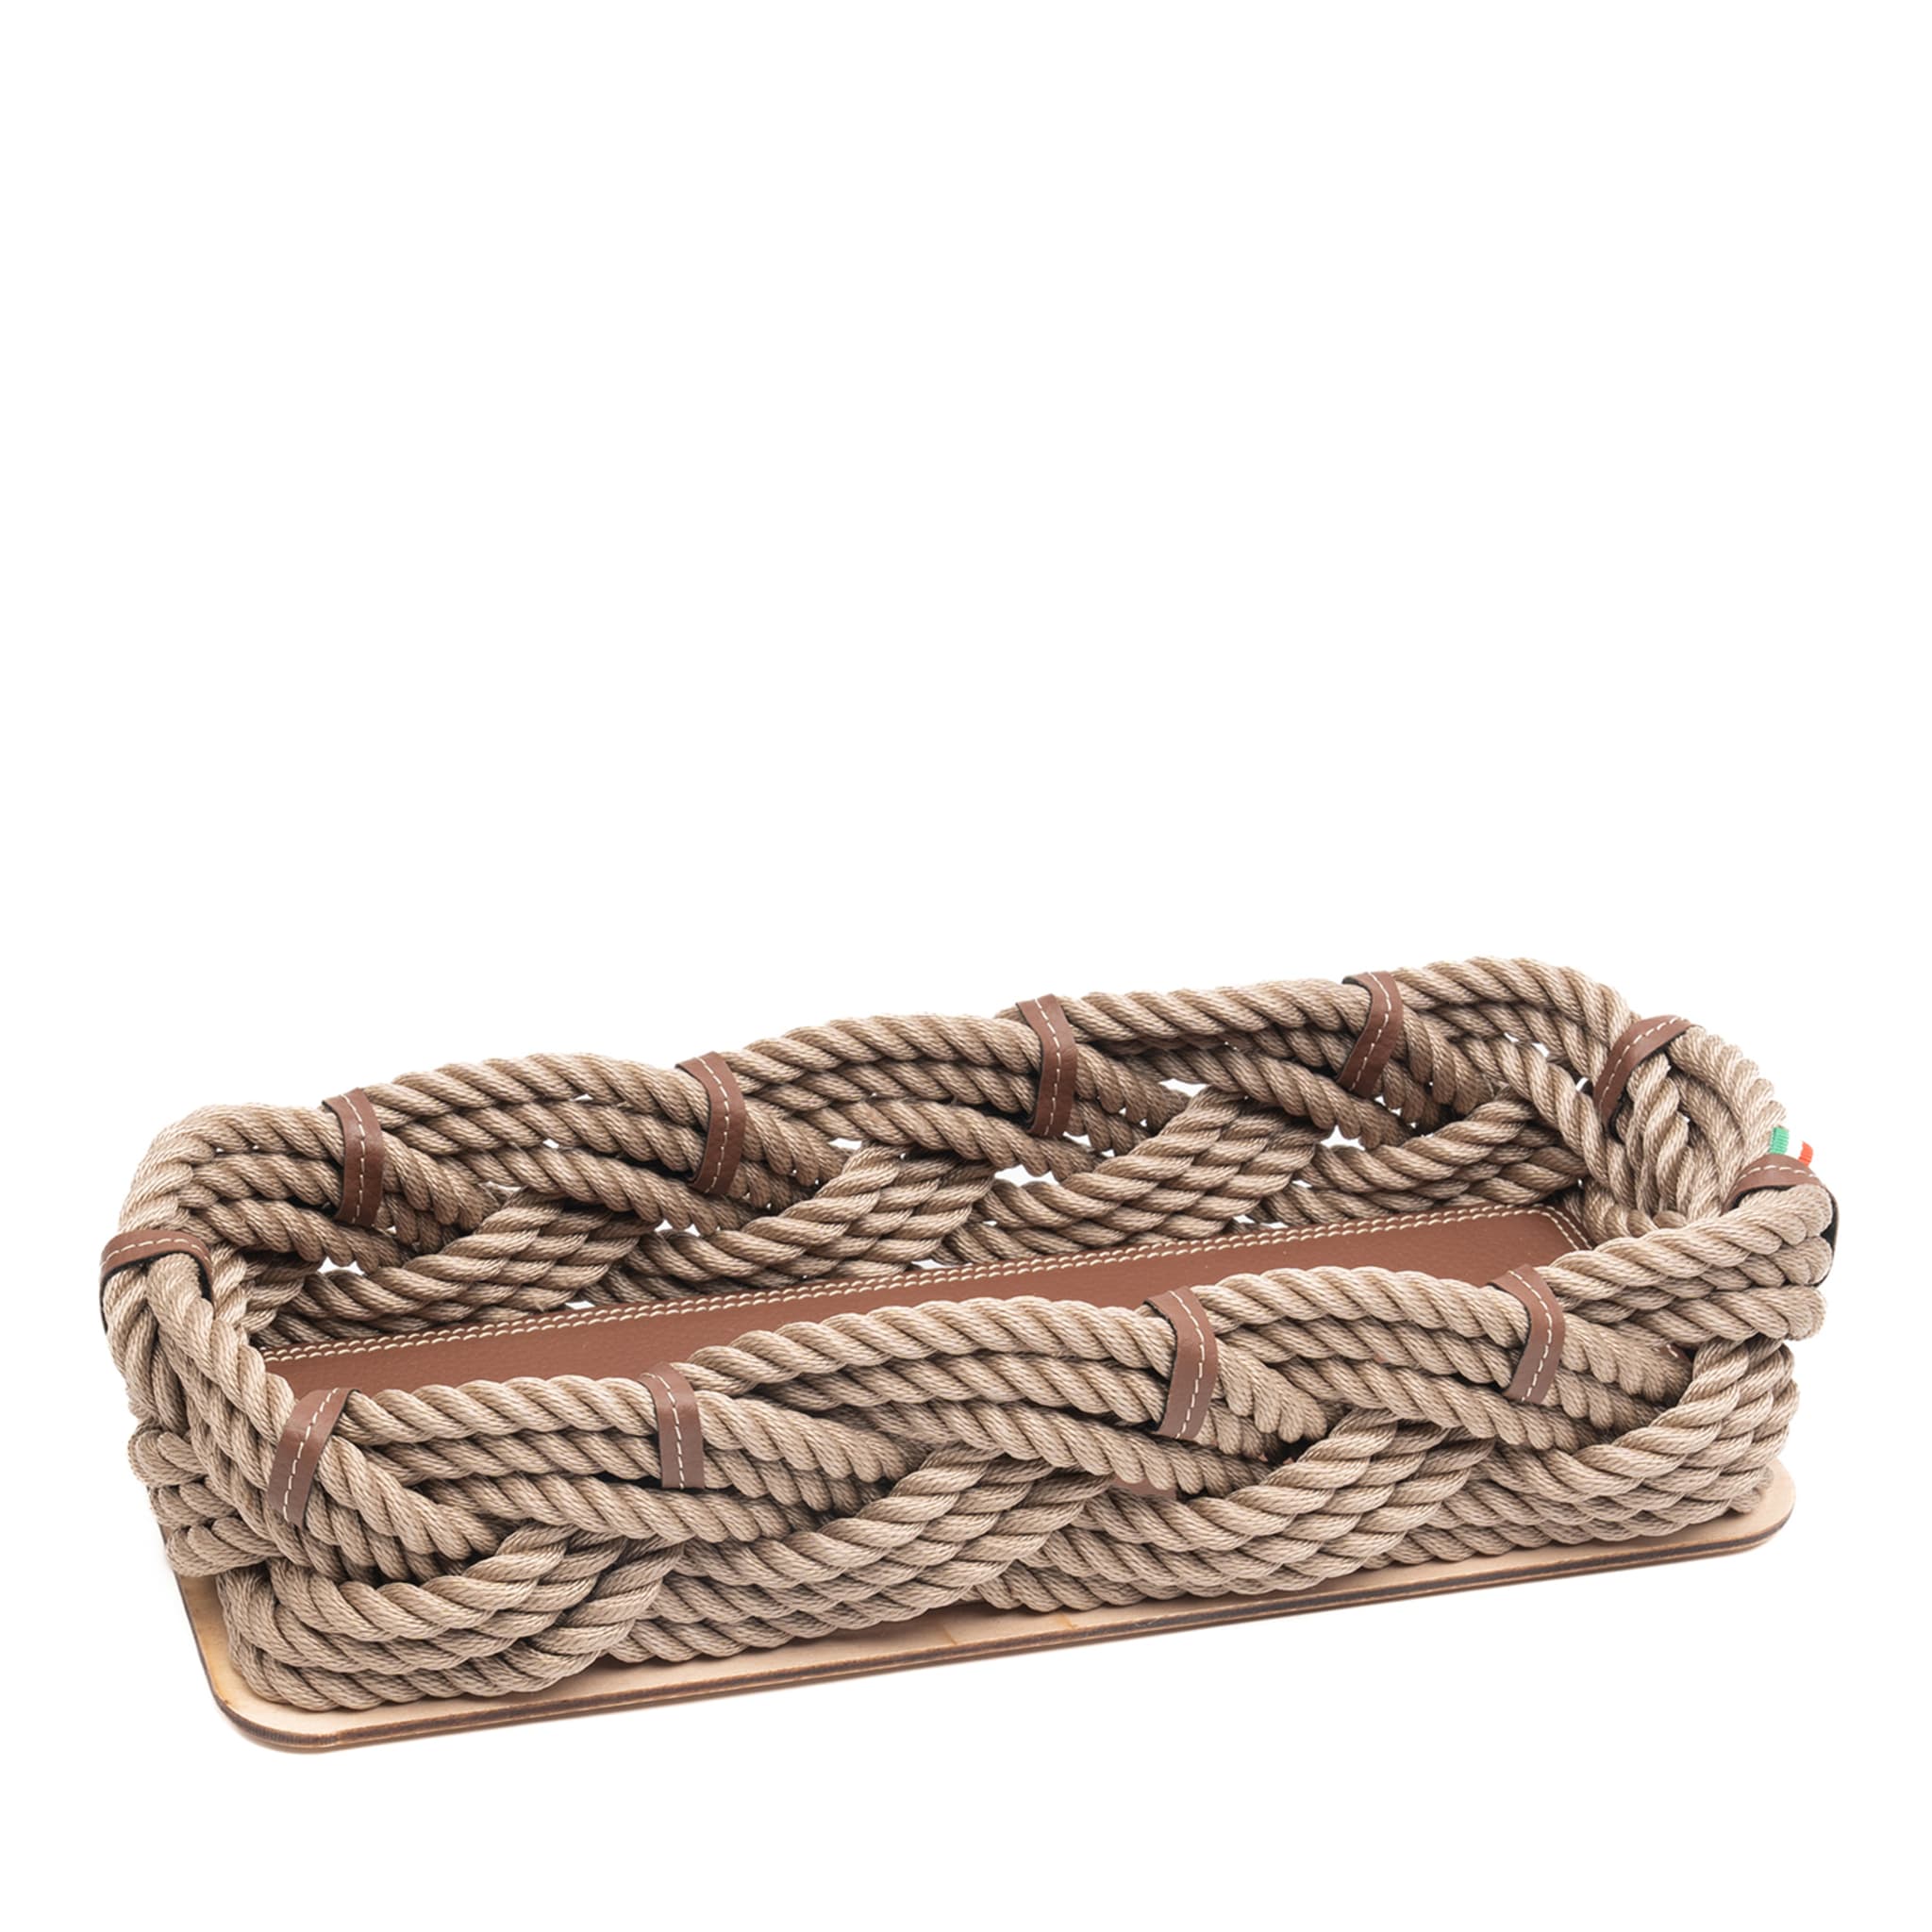 Nautical-Inspired Medium Beige Rectangular Rope Basket  - Main view